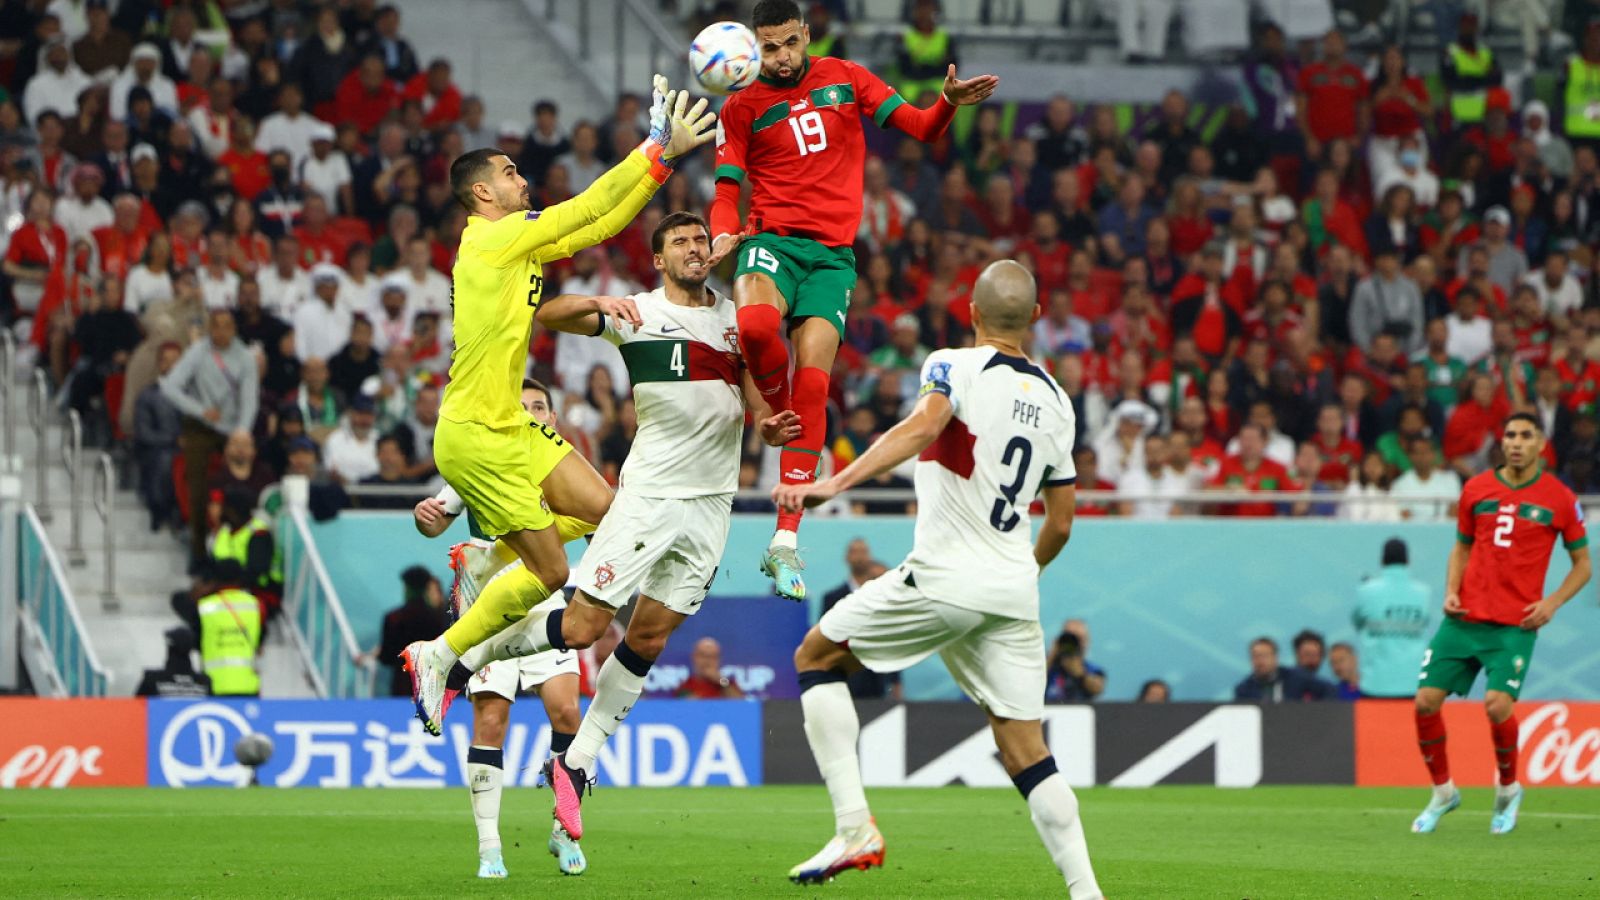 Marruecos 1-0 Portugal: El gol de En-Nesyri